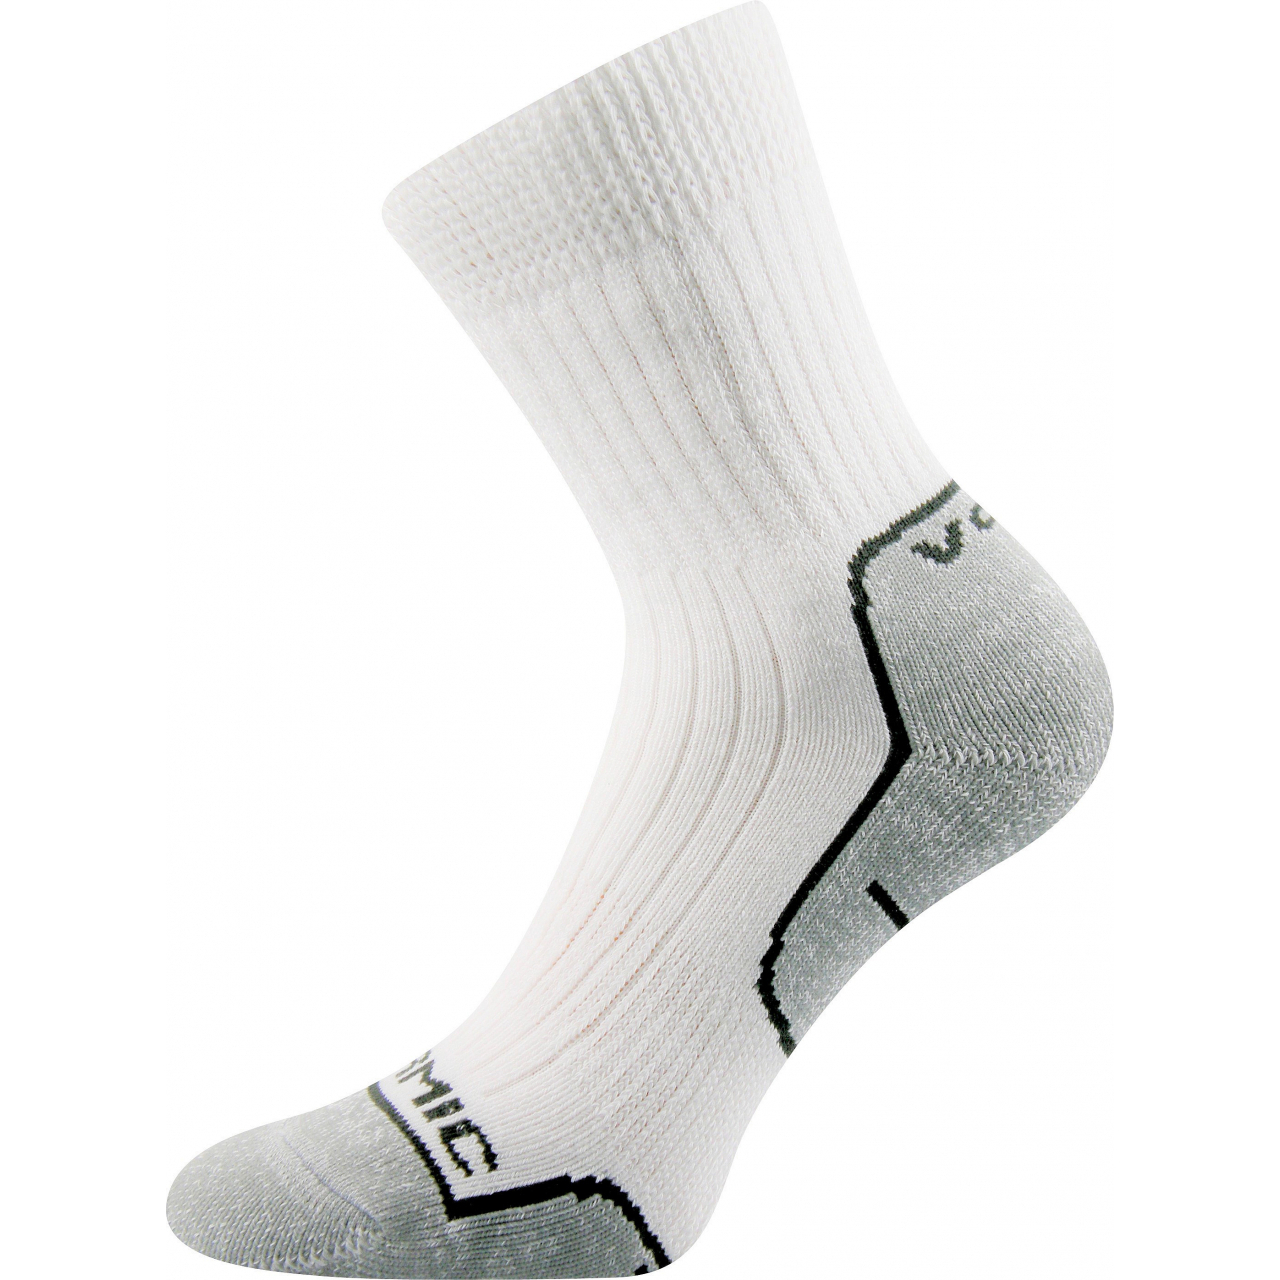 Ponožky unisex termo Voxx Zenith L + P - bílé-šedé, 35-37